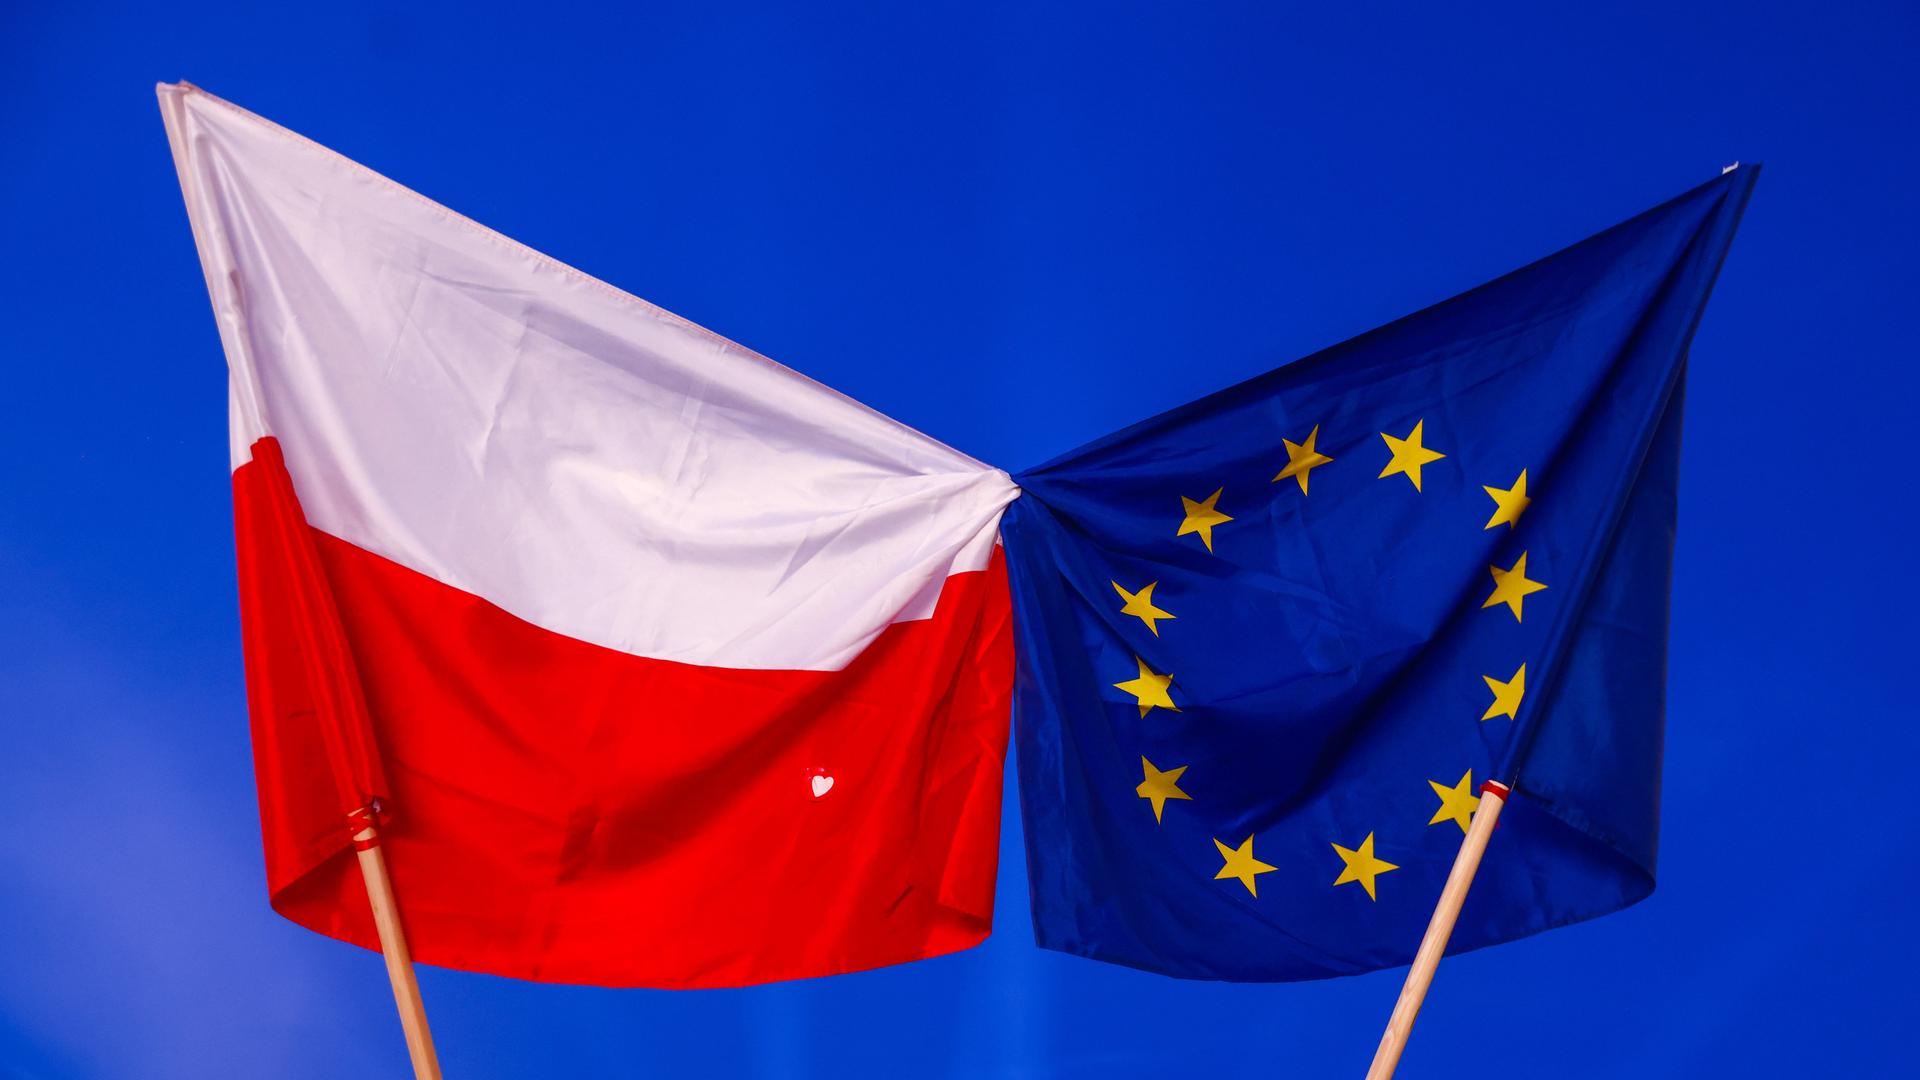 Die polnische und die EU-Flagge zusammengeknotet - während einer Demonstration der Opposition in Krakau.